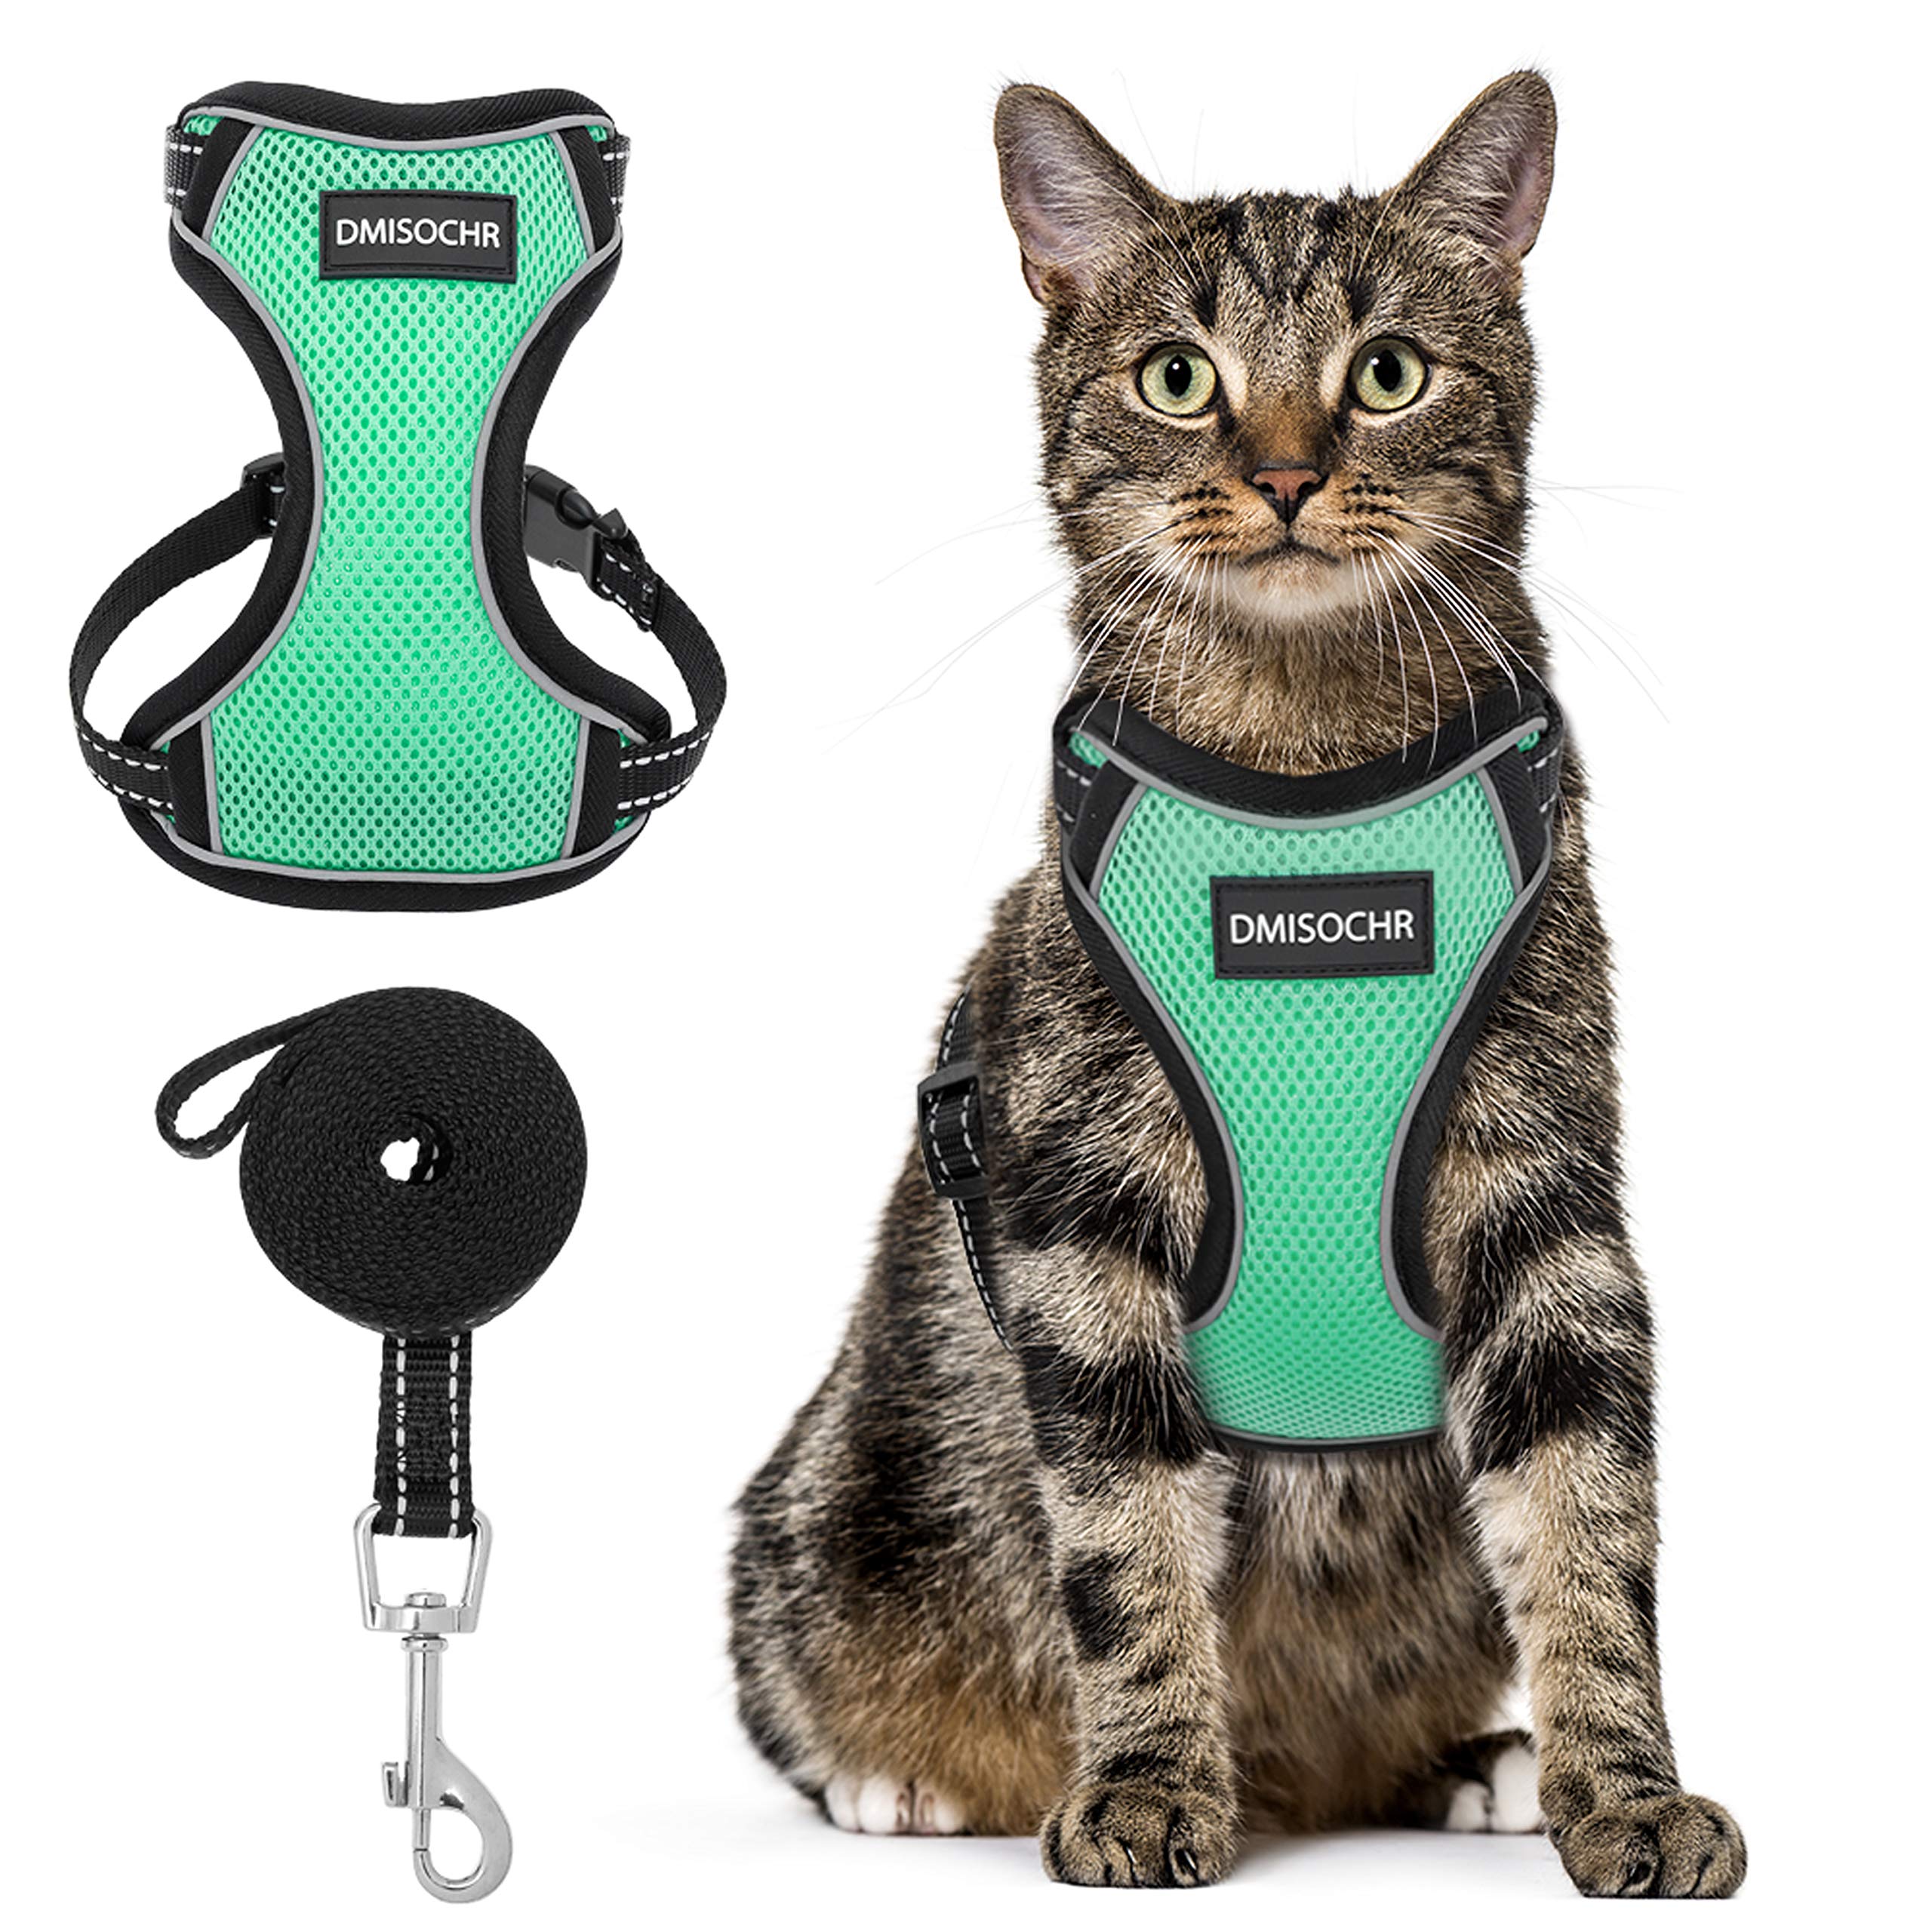 Cat Harness and Leash Set - Escape Proof Safe Cat Vest